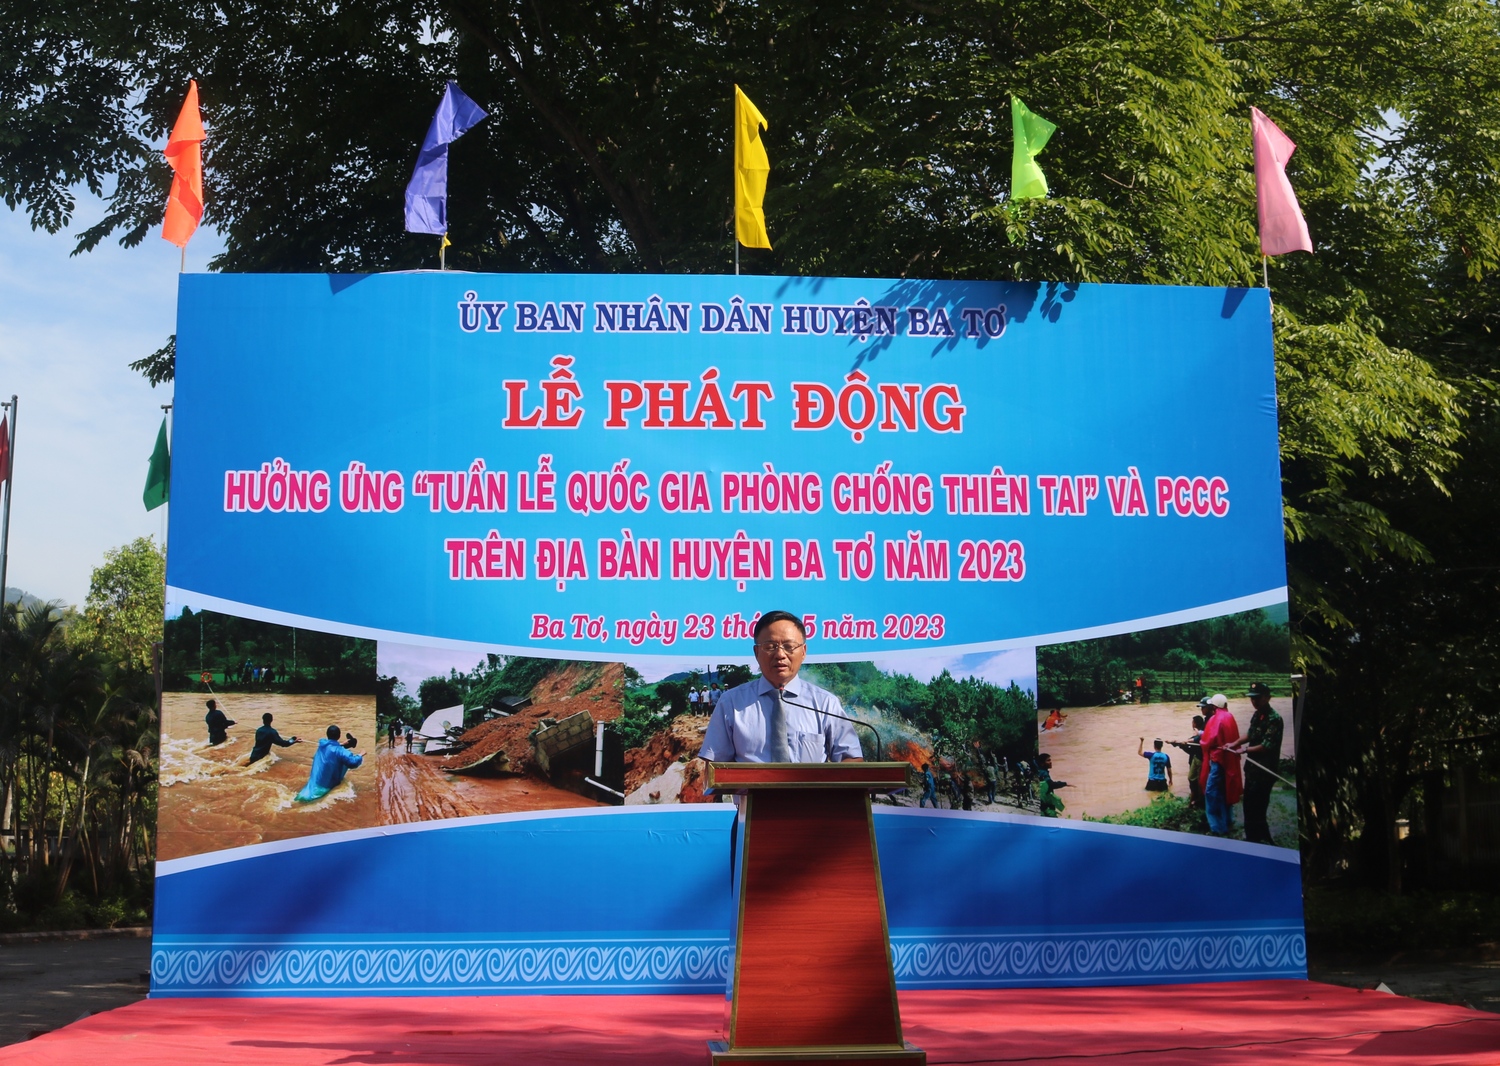 Lễ phát động hưởng ứng “Tuần lễ Quốc gia phòng chống thiên tai” và PCCC trên địa bàn huyện Ba Tơ năm 2023